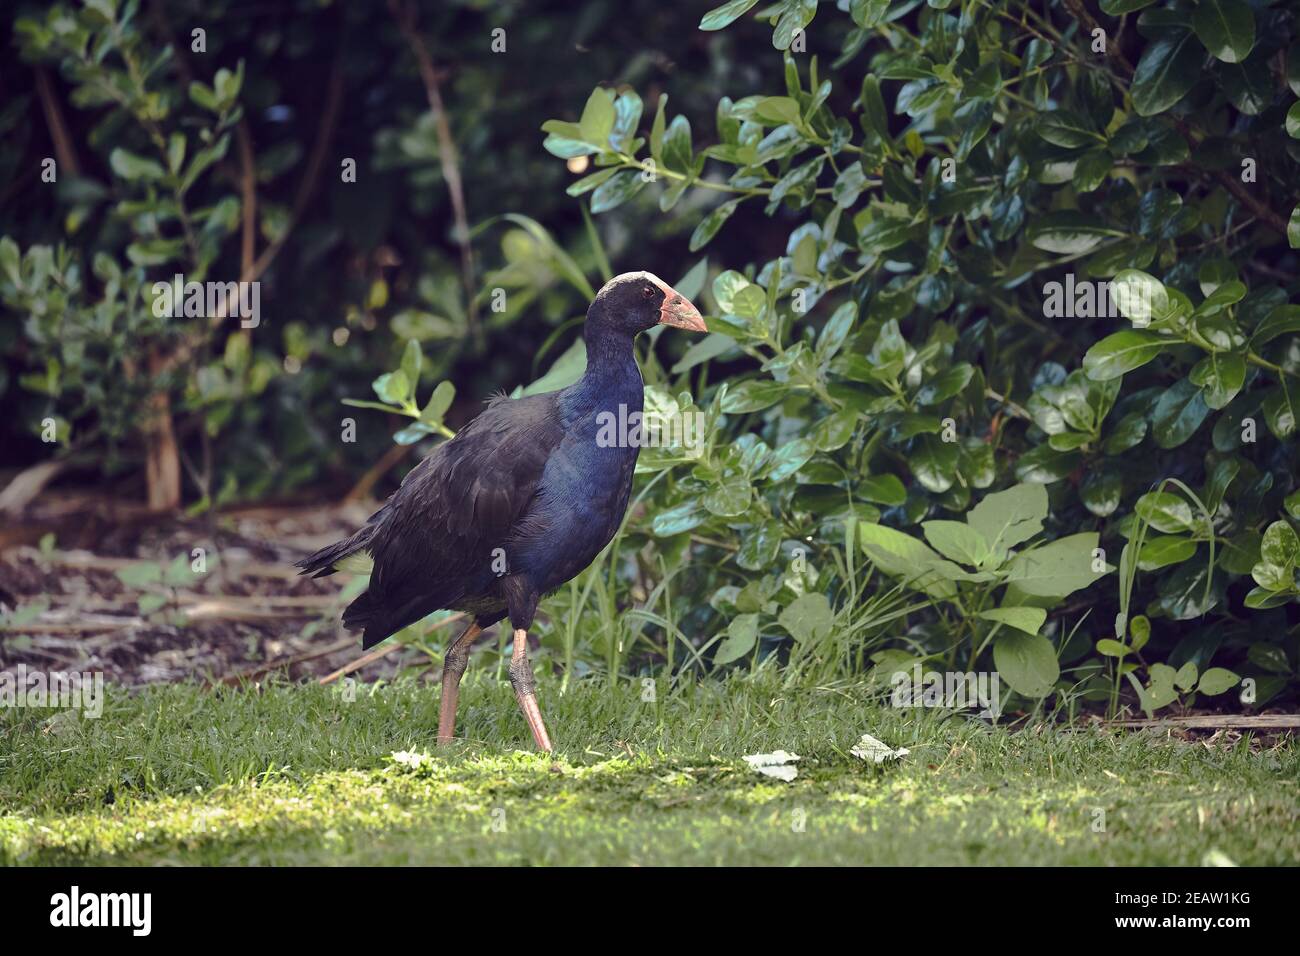 Pukeko bird in New Zealand Stock Photo